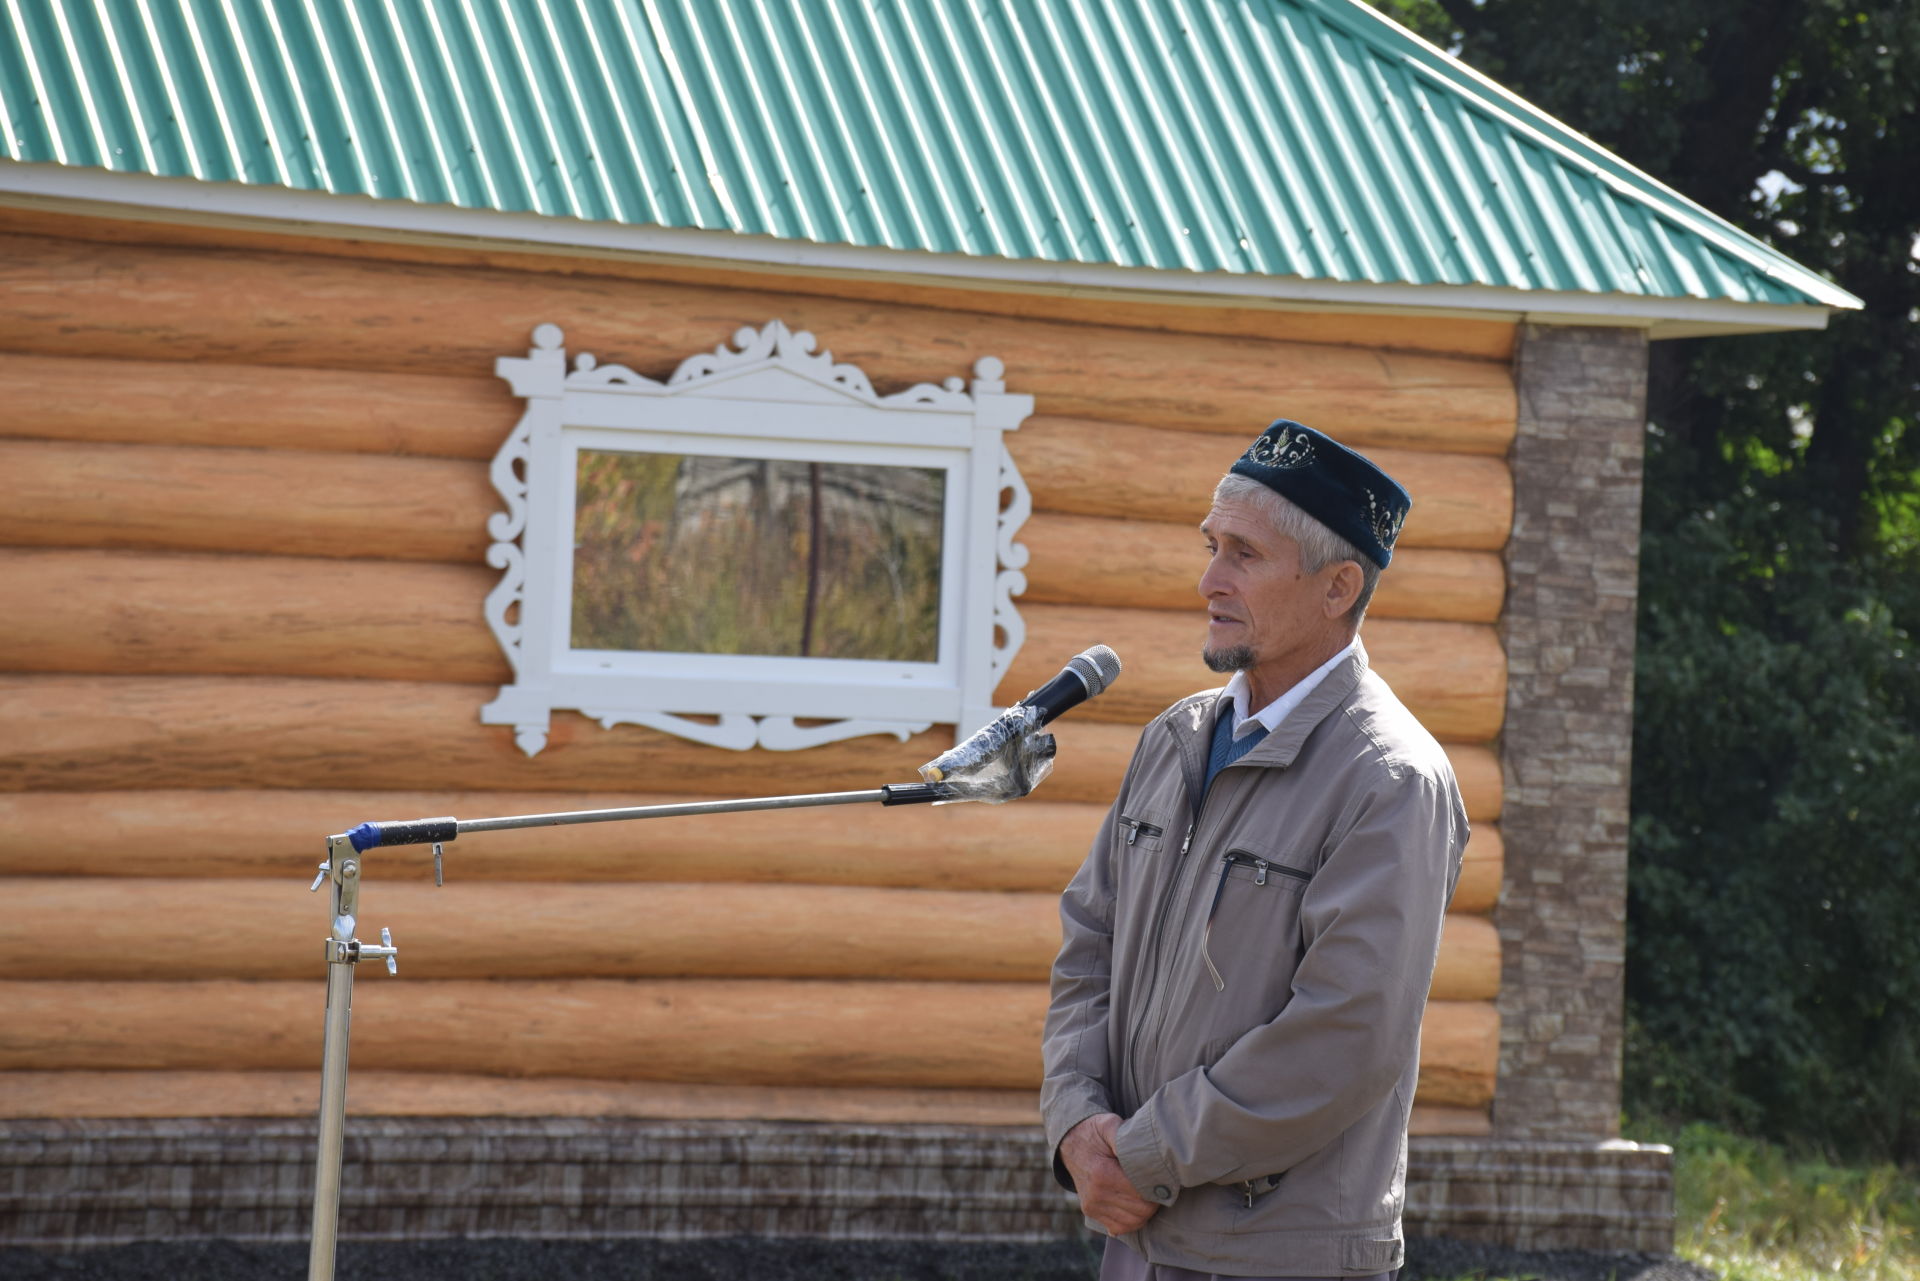 Жители Нариманова отпраздновали открытие новой мечети